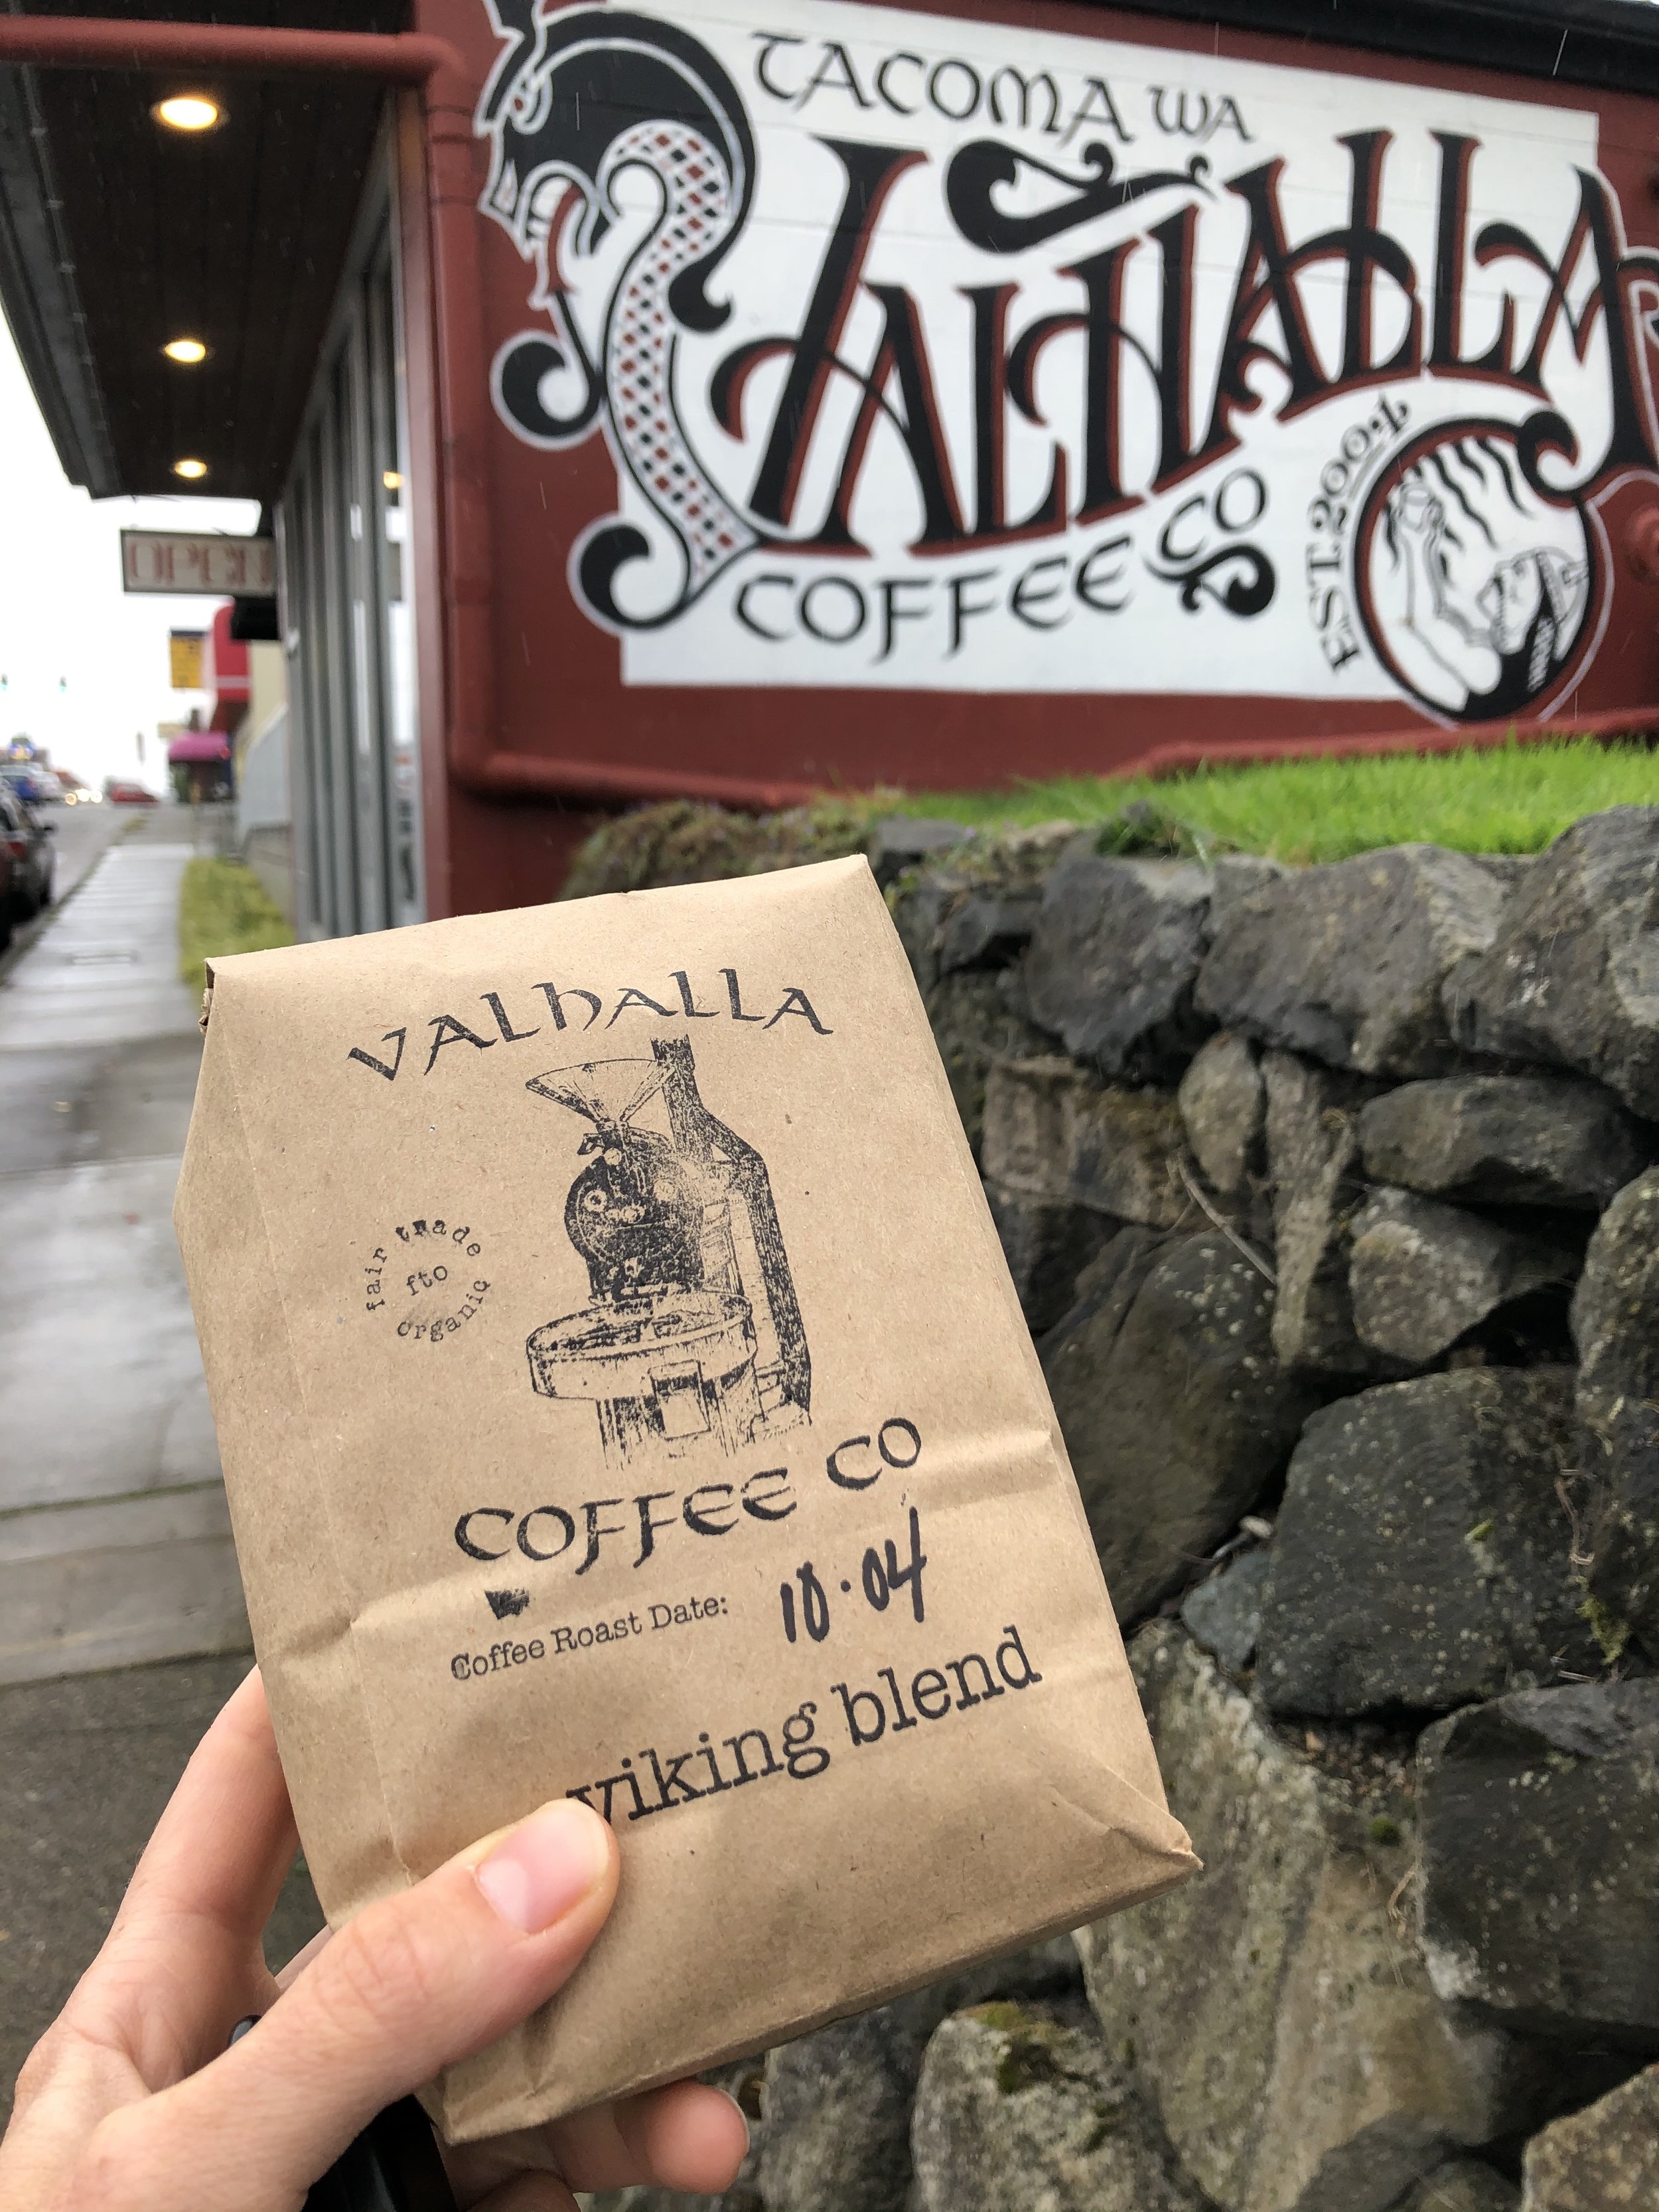 Valhalla Coffee Roasters